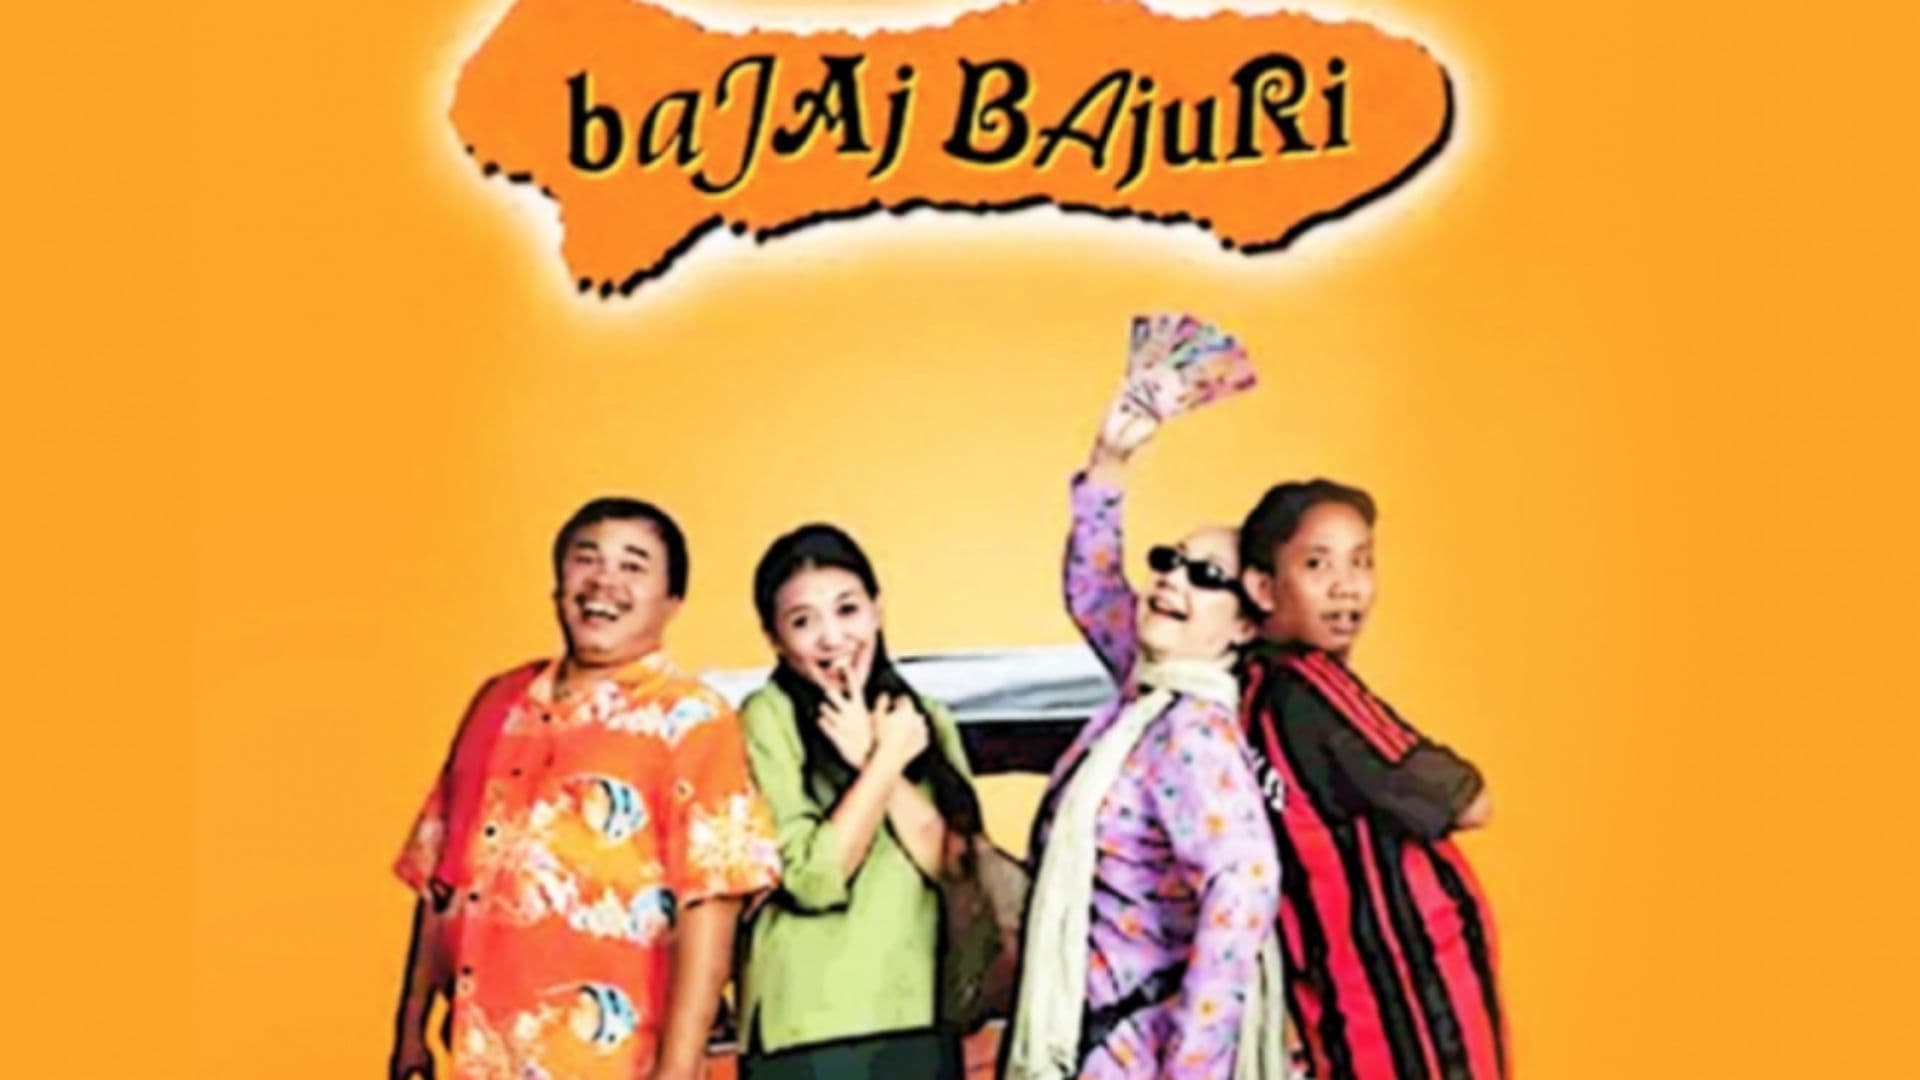 Bajaj Bajuri - serie